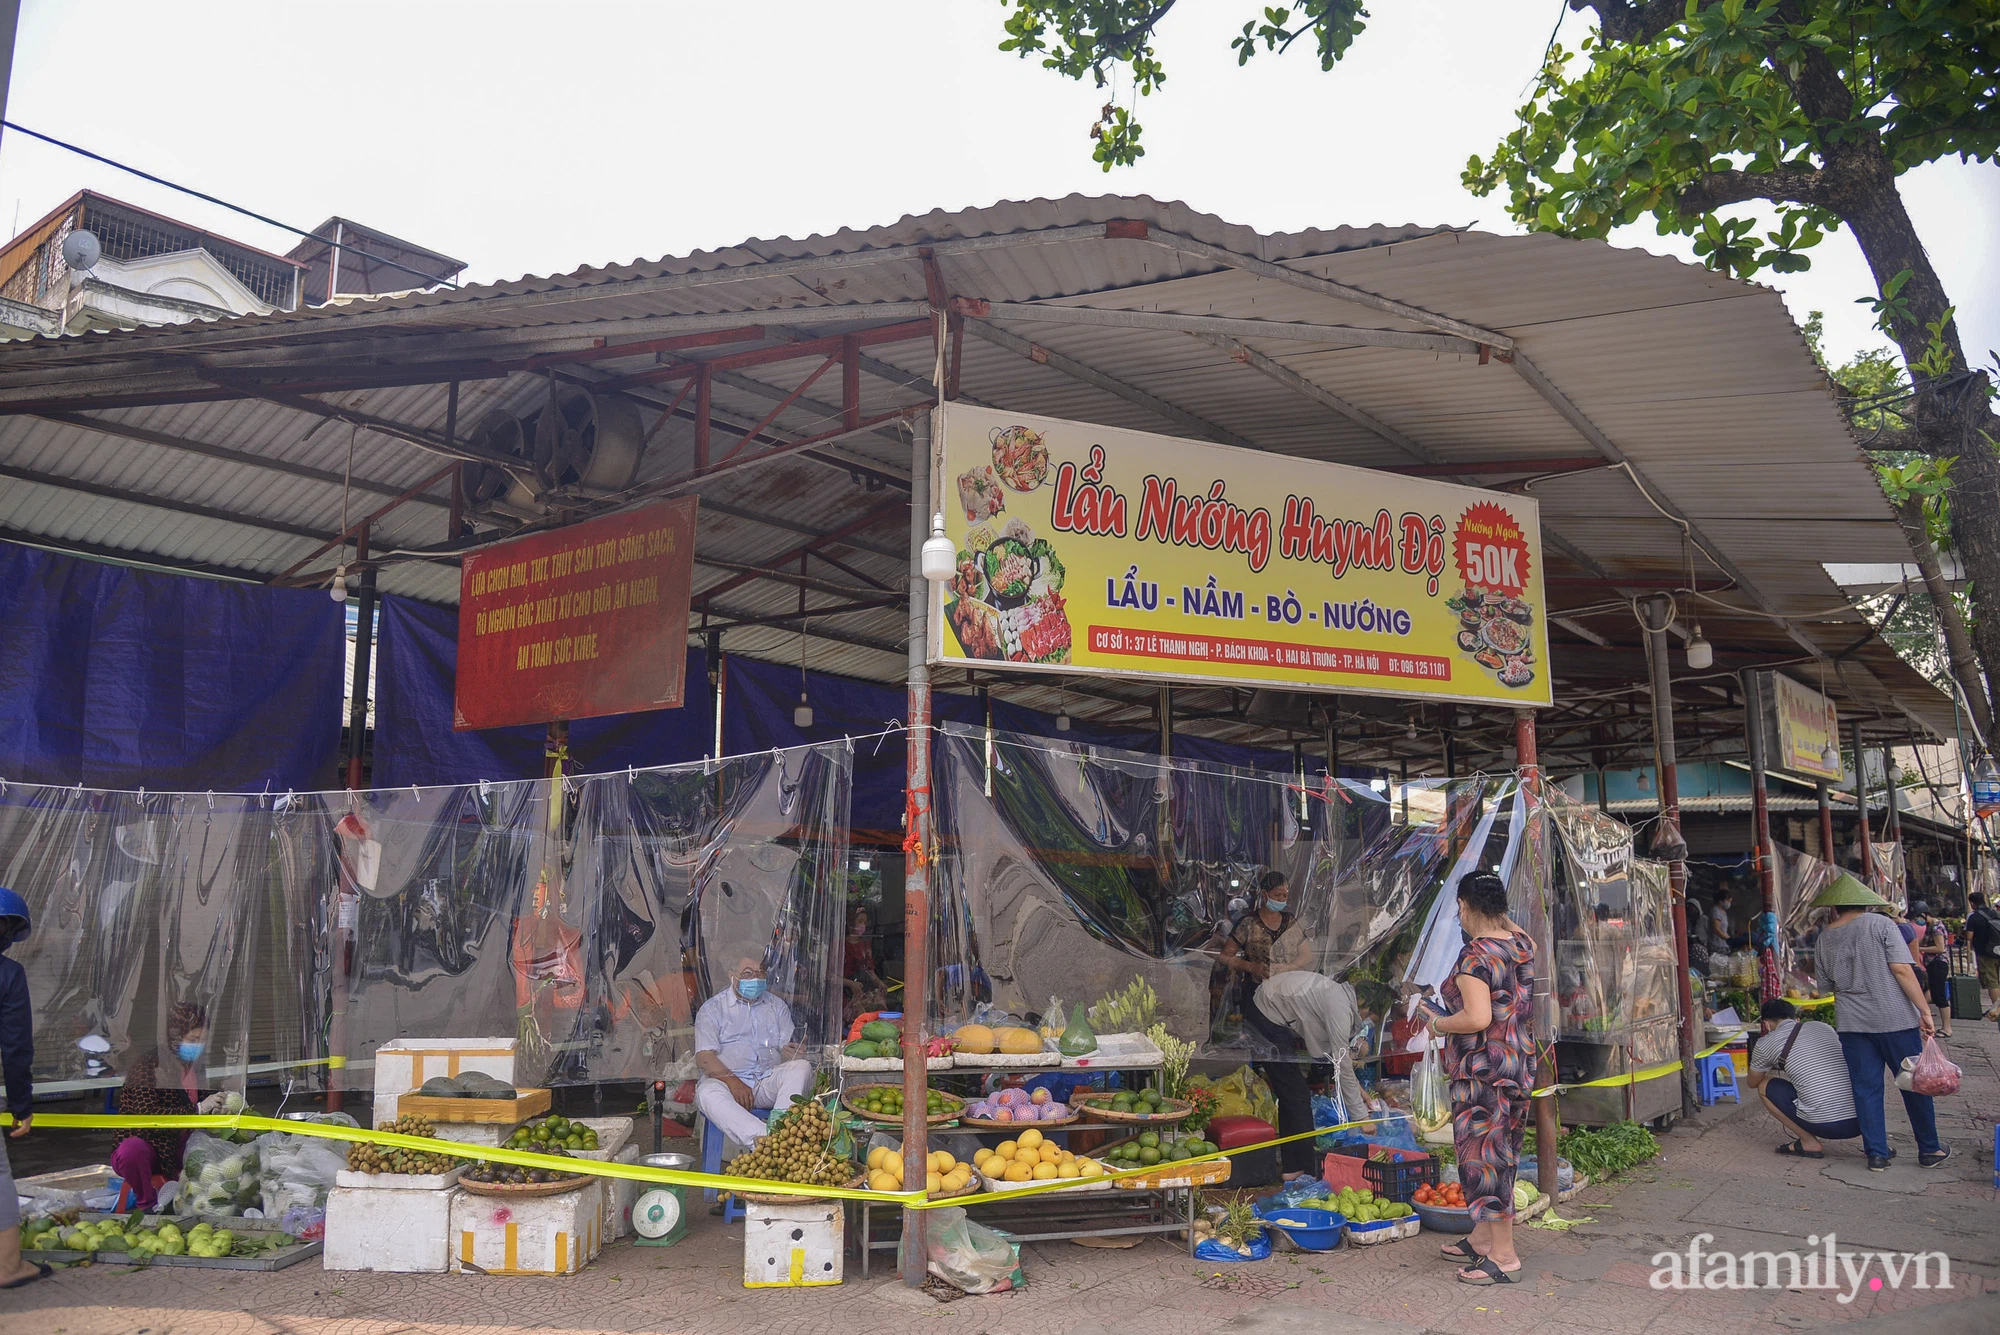 Ấn tượng với khu chợ dân sinh đầu tiên ở Hà Nội quây tấm nilon phòng dịch COVID-19, tiểu thương chia ca đứng bán theo ngày chẵn, lẻ - Ảnh 1.